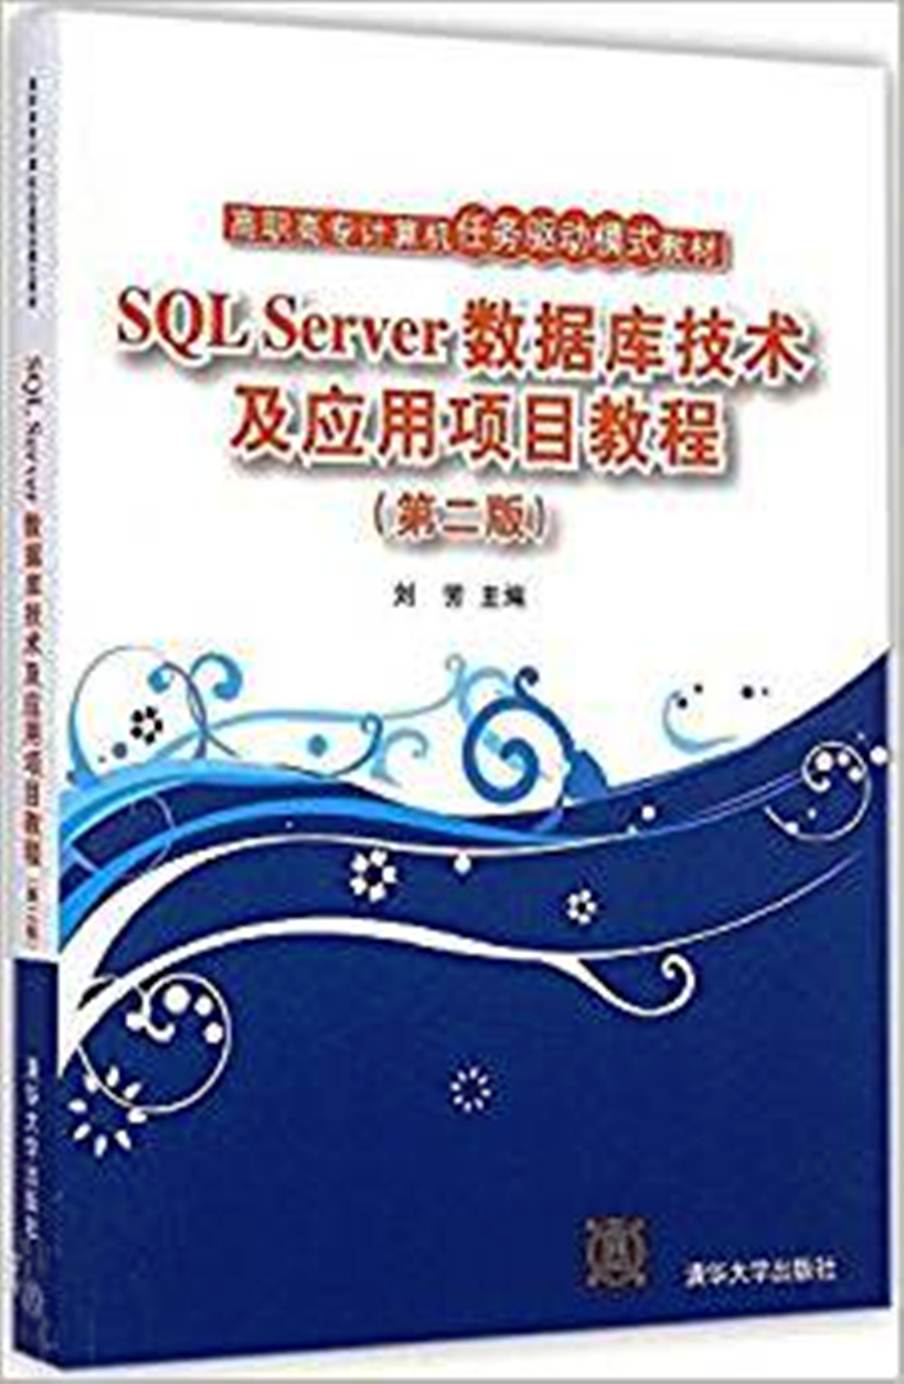 SQL Server資料庫技術及套用項目教程第二版(SQL Server資料庫技術及套用項目教程（第二版）)